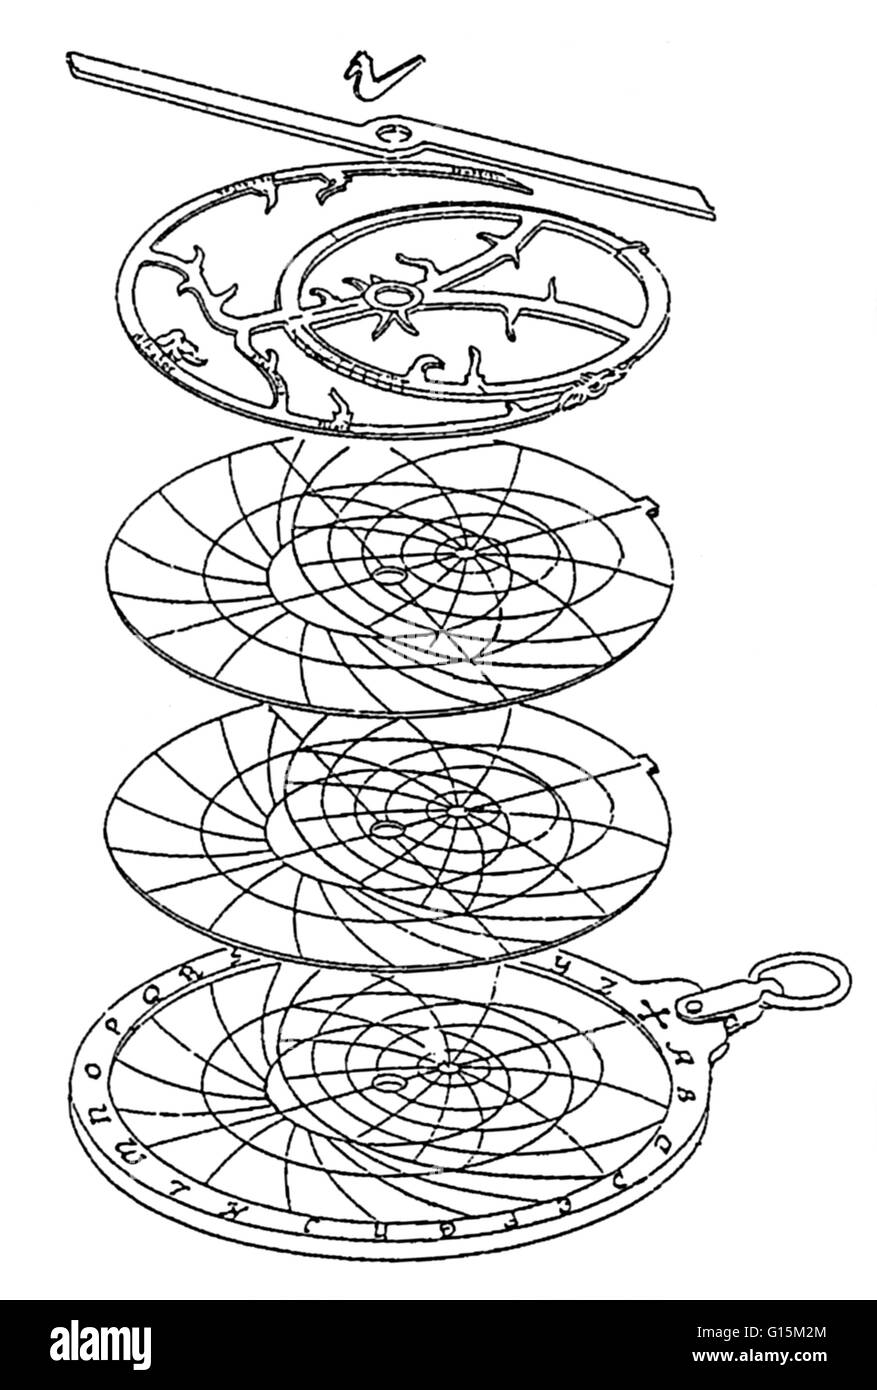 Ein Astrolabium ist ein altes Instrument weit verbreitet in den mittelalterlichen Zeiten von Seefahrern und Astronomen, um Breitengrad, Längengrad und Tageszeit zu bestimmen. Ein Astrolabium besteht aus einer Scheibe, genannt die Mater, die tief genug, um eine oder mehrere Ebenen Platten ca Stockfoto